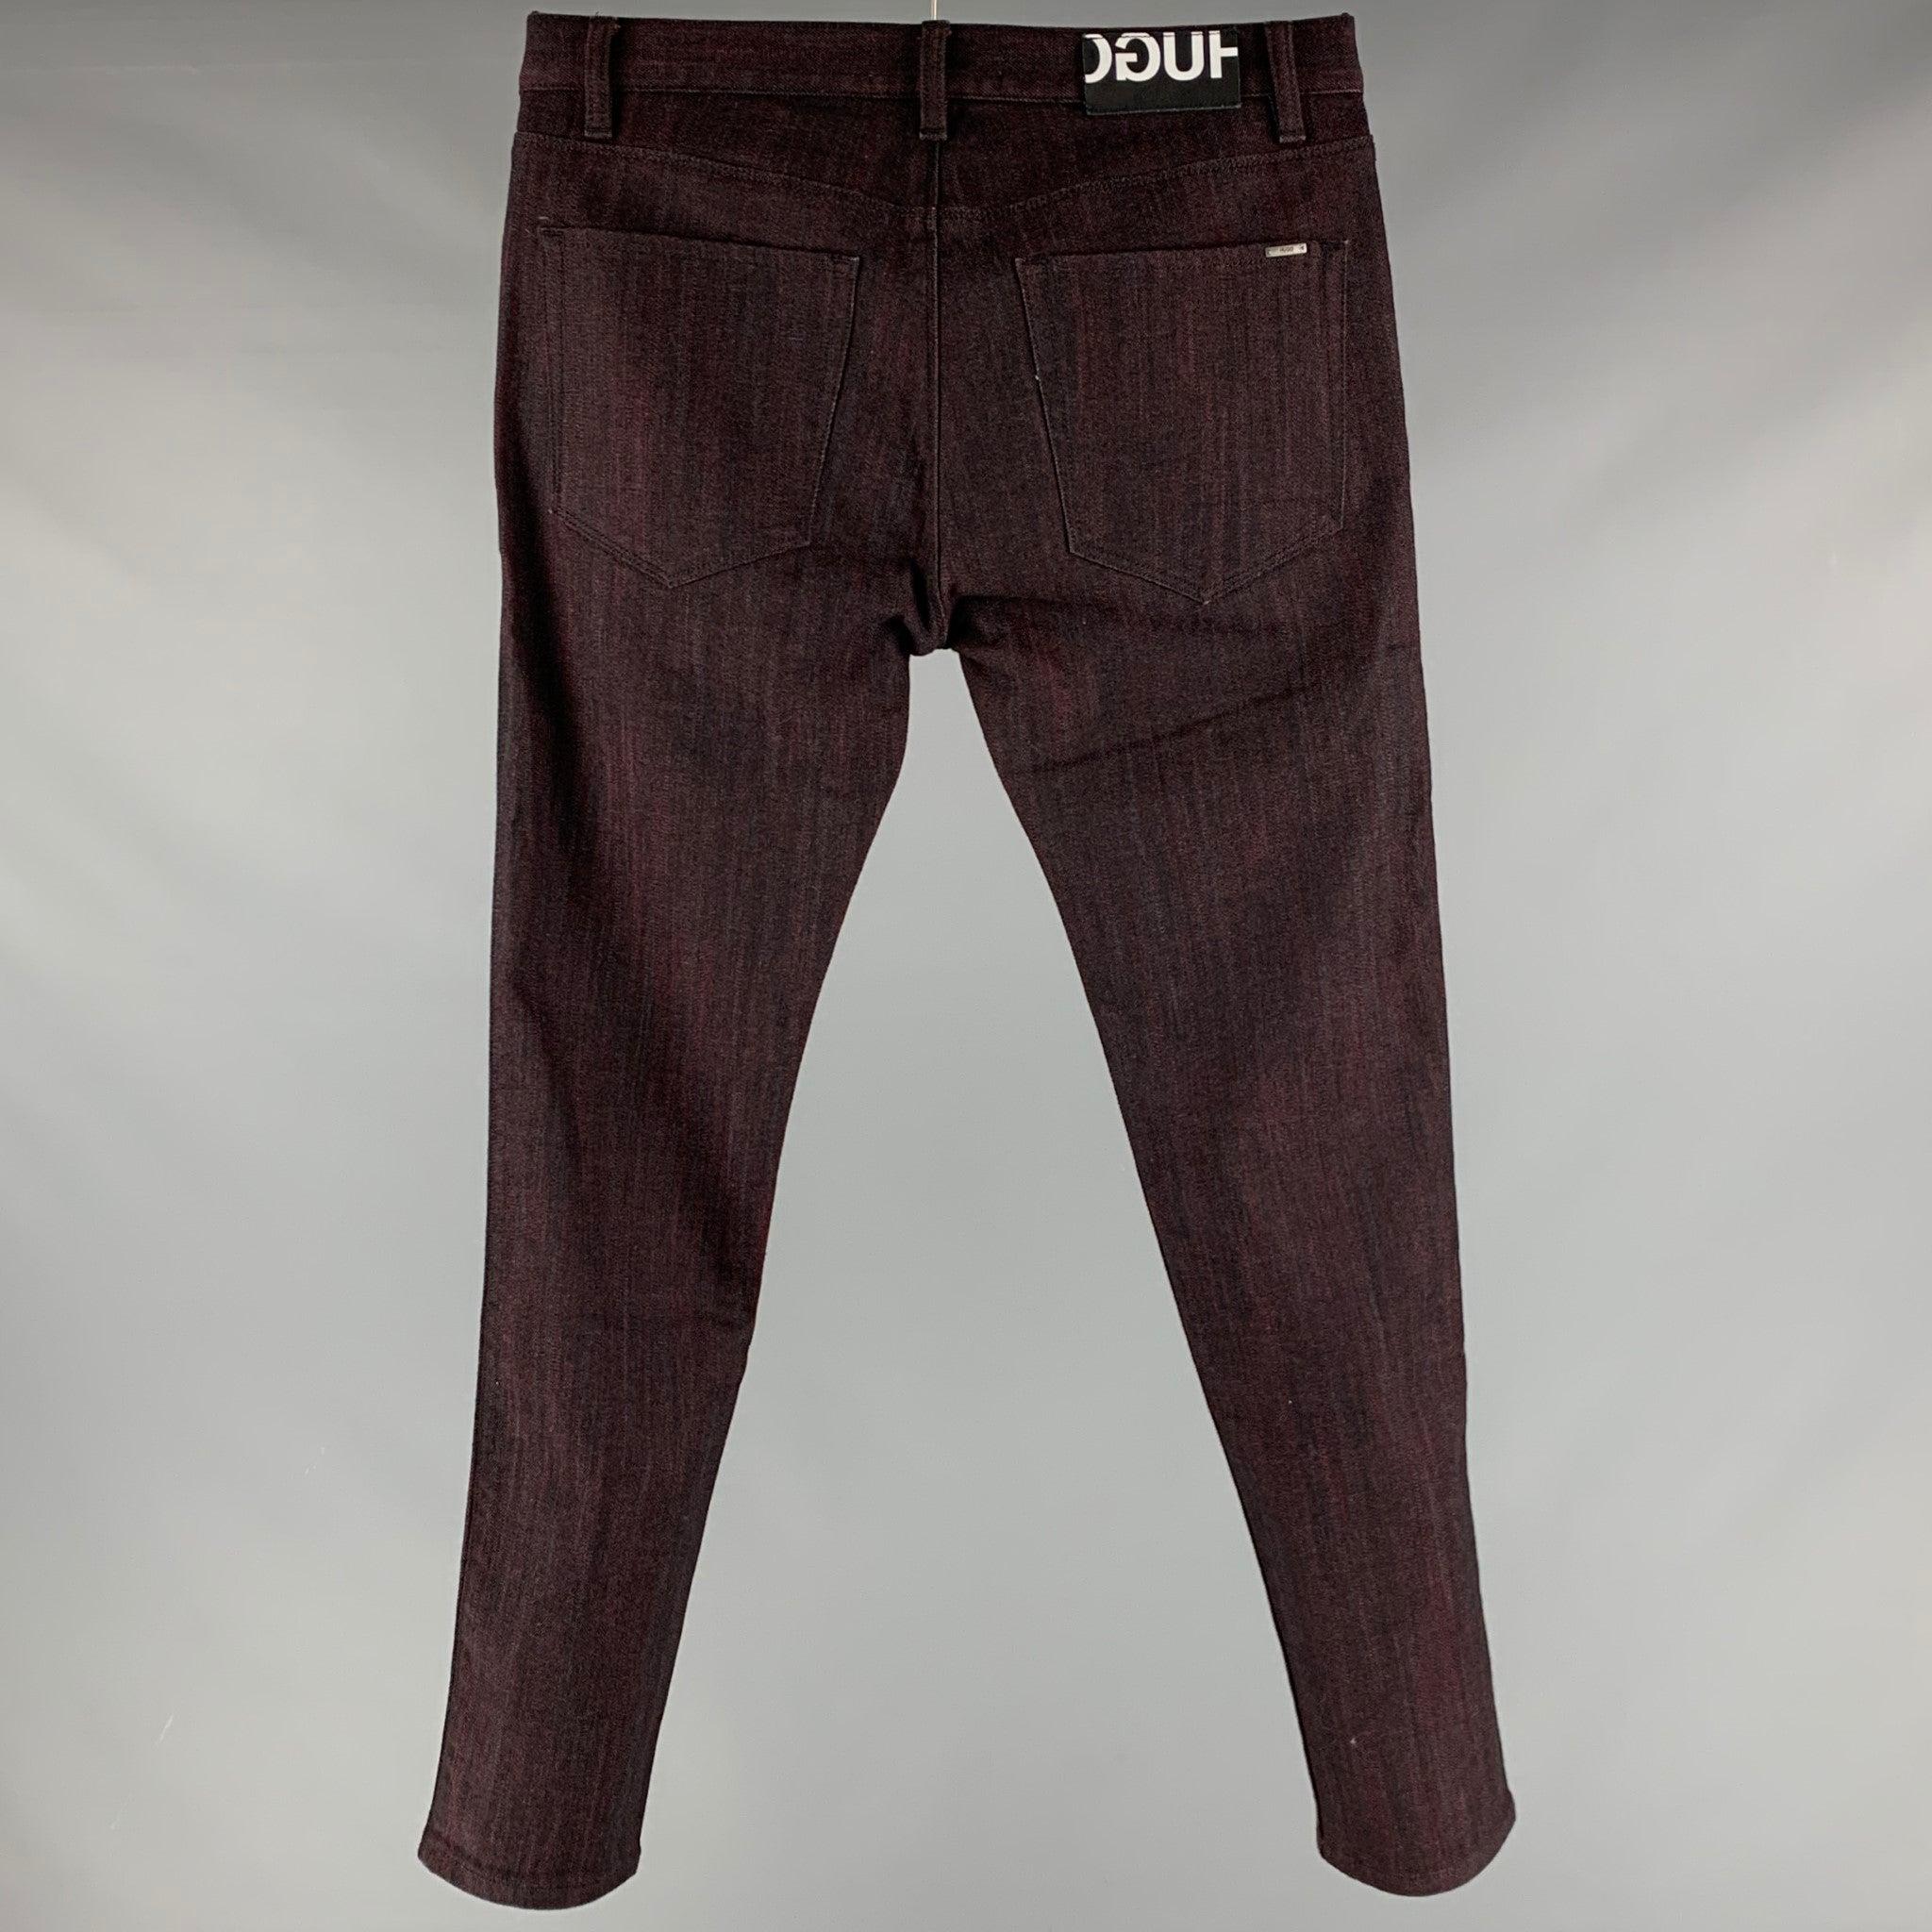 HUGO by HUGO BOSS Jeans
aus schwarzem und burgunderrotem Baumwollmischgewebe mit fünf Taschen und Reißverschluss. 

Markiert:   32/32 

Abmessungen: 
  Taille: 32 Zoll Steigung: 8,5 Zoll Innennaht: 32 Zoll 
  
  
 
Referenz: 127595
Kategorie: